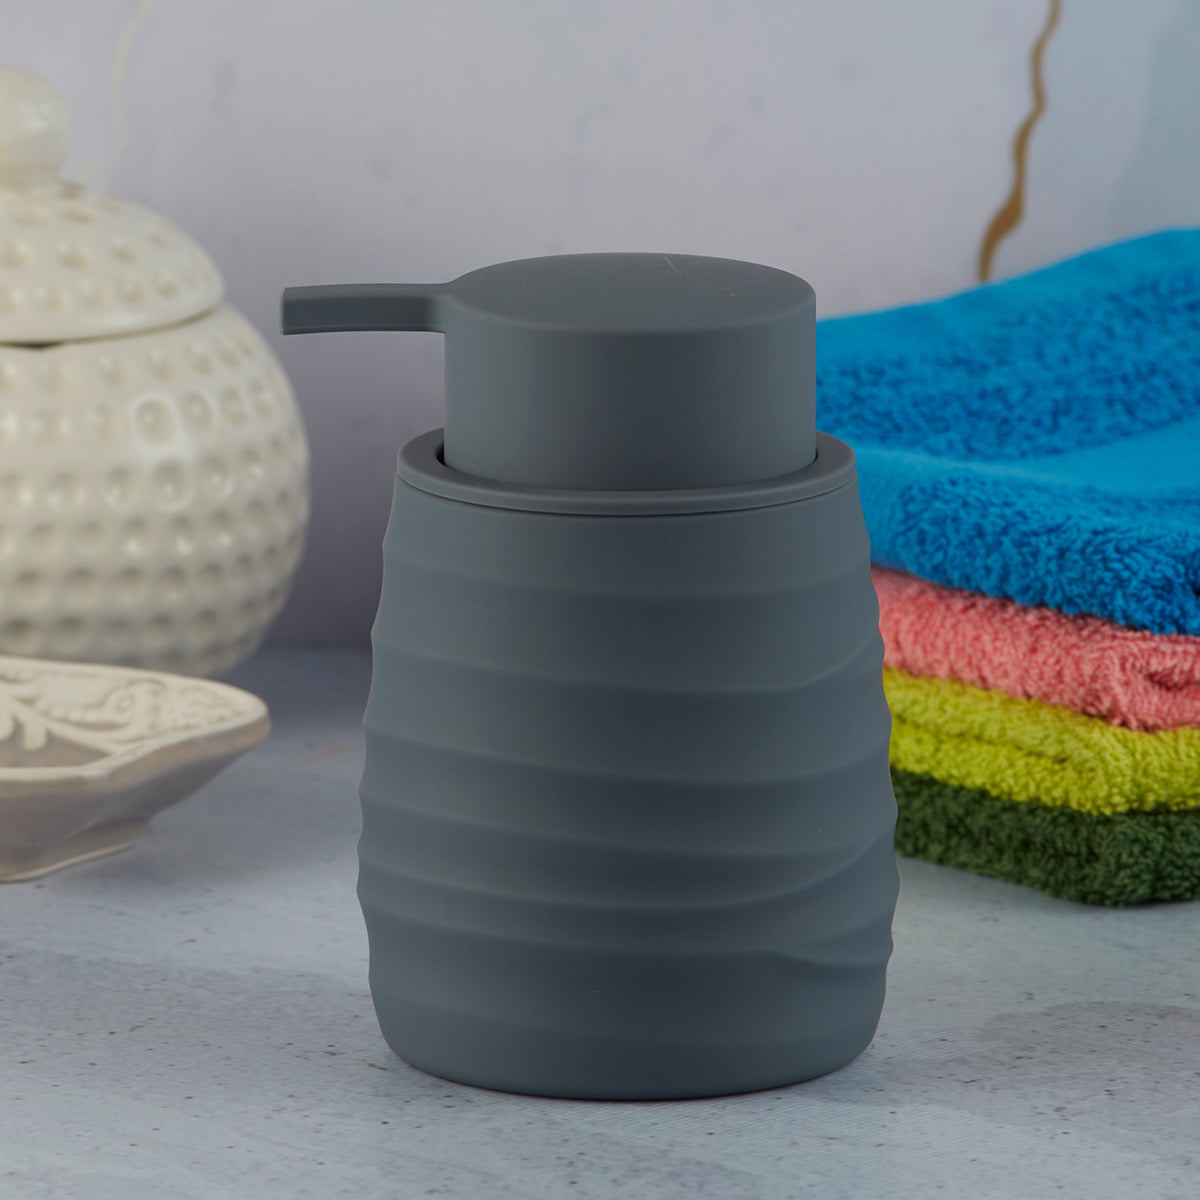 Acrylic Soap Dispenser Pump for Bathroom for Bath Gel, Lotion, Shampoo (9916)